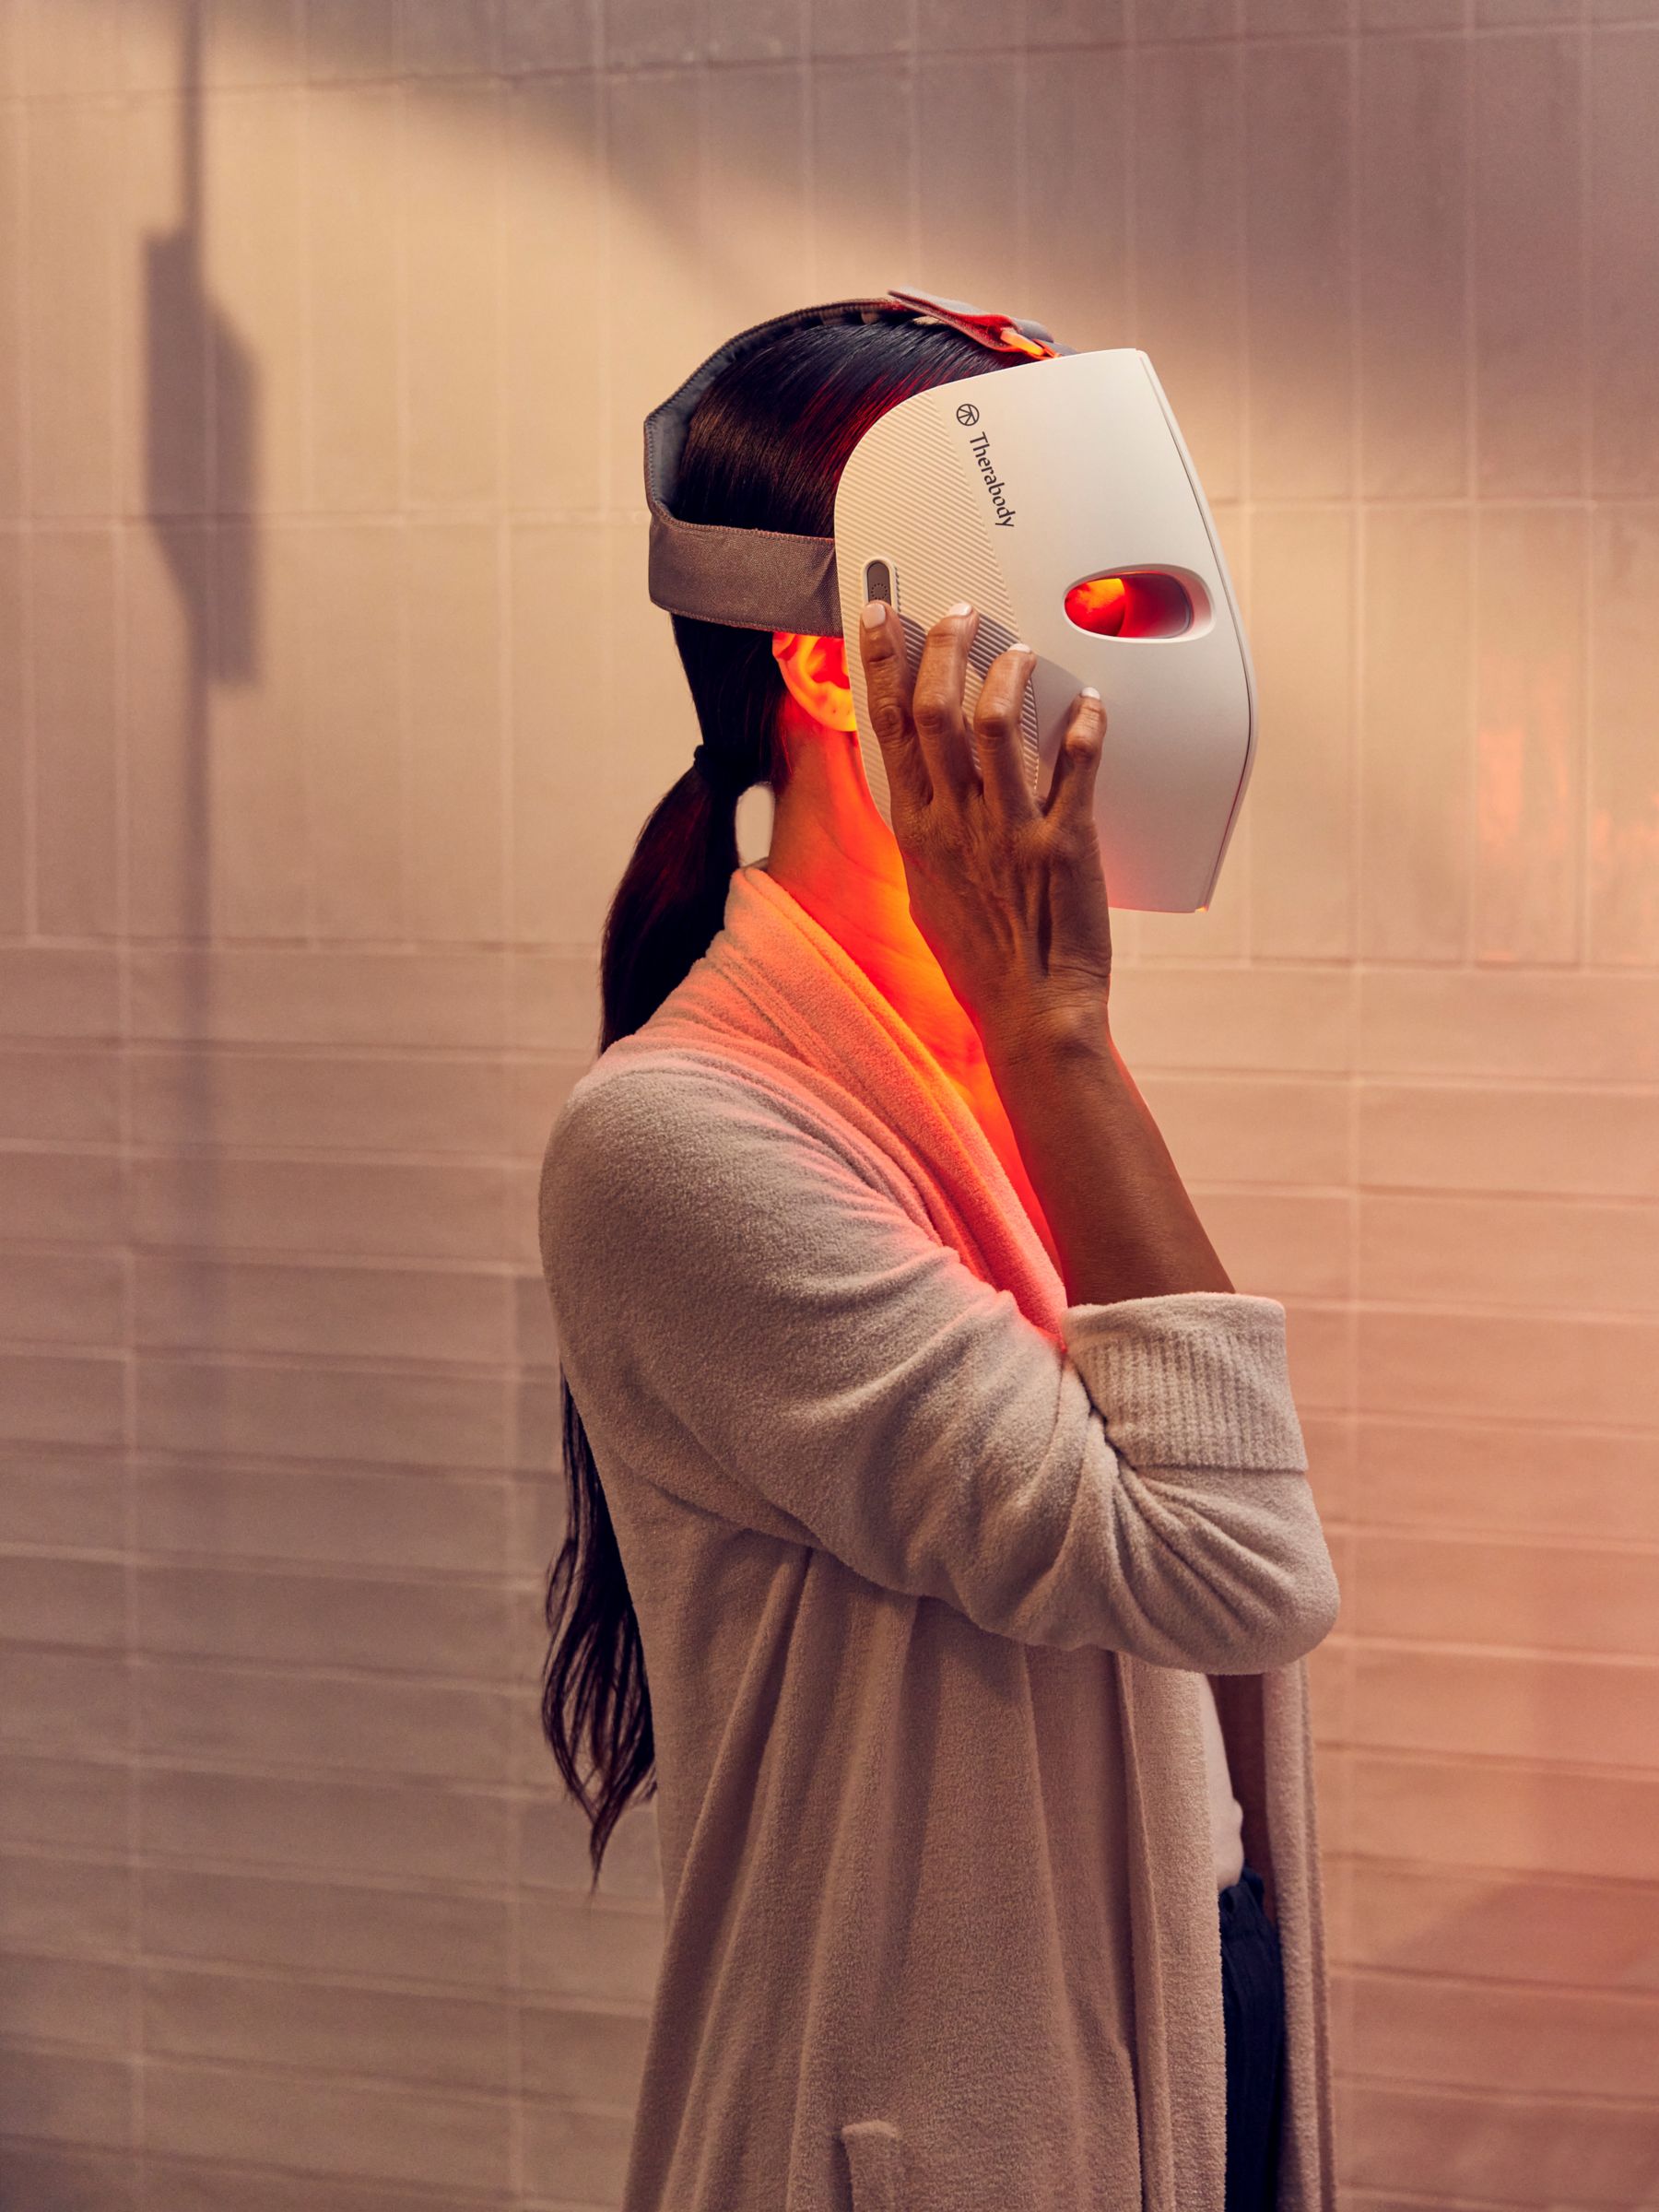 TheraFace LED Skincare Mask by Therabody